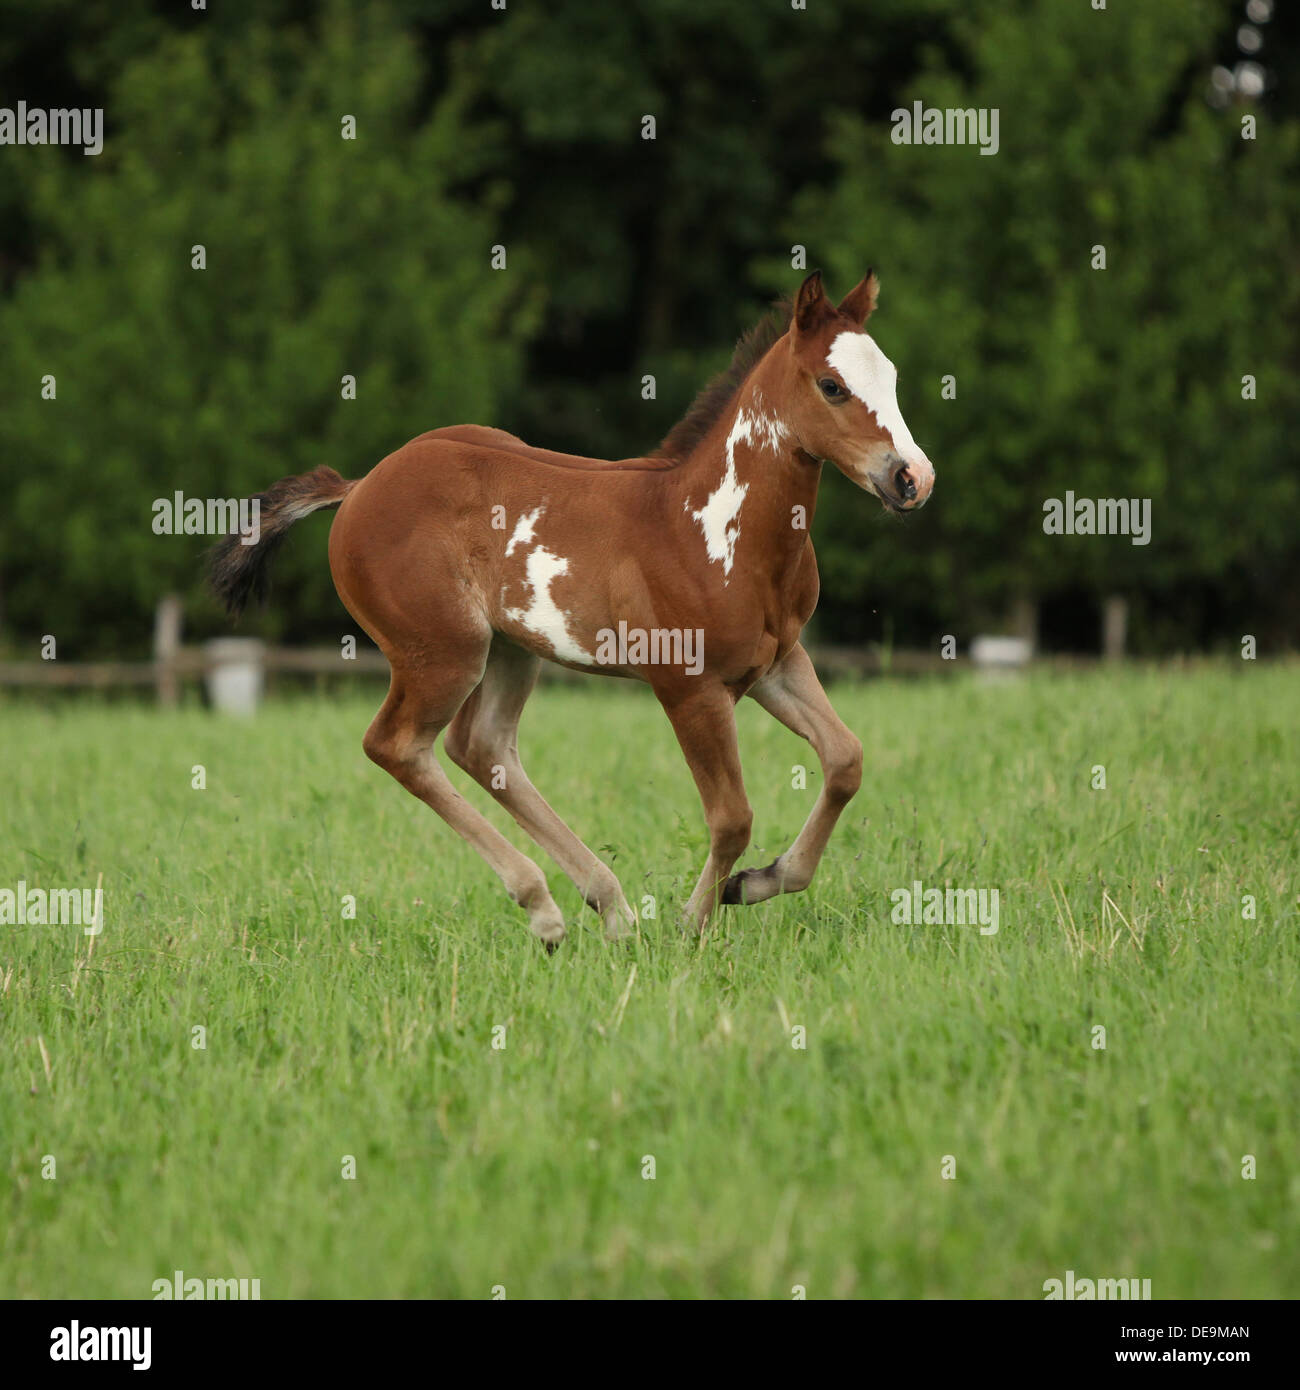 Jolie pouliche Paint horse s'exécutant sur des pâturages en été Banque D'Images